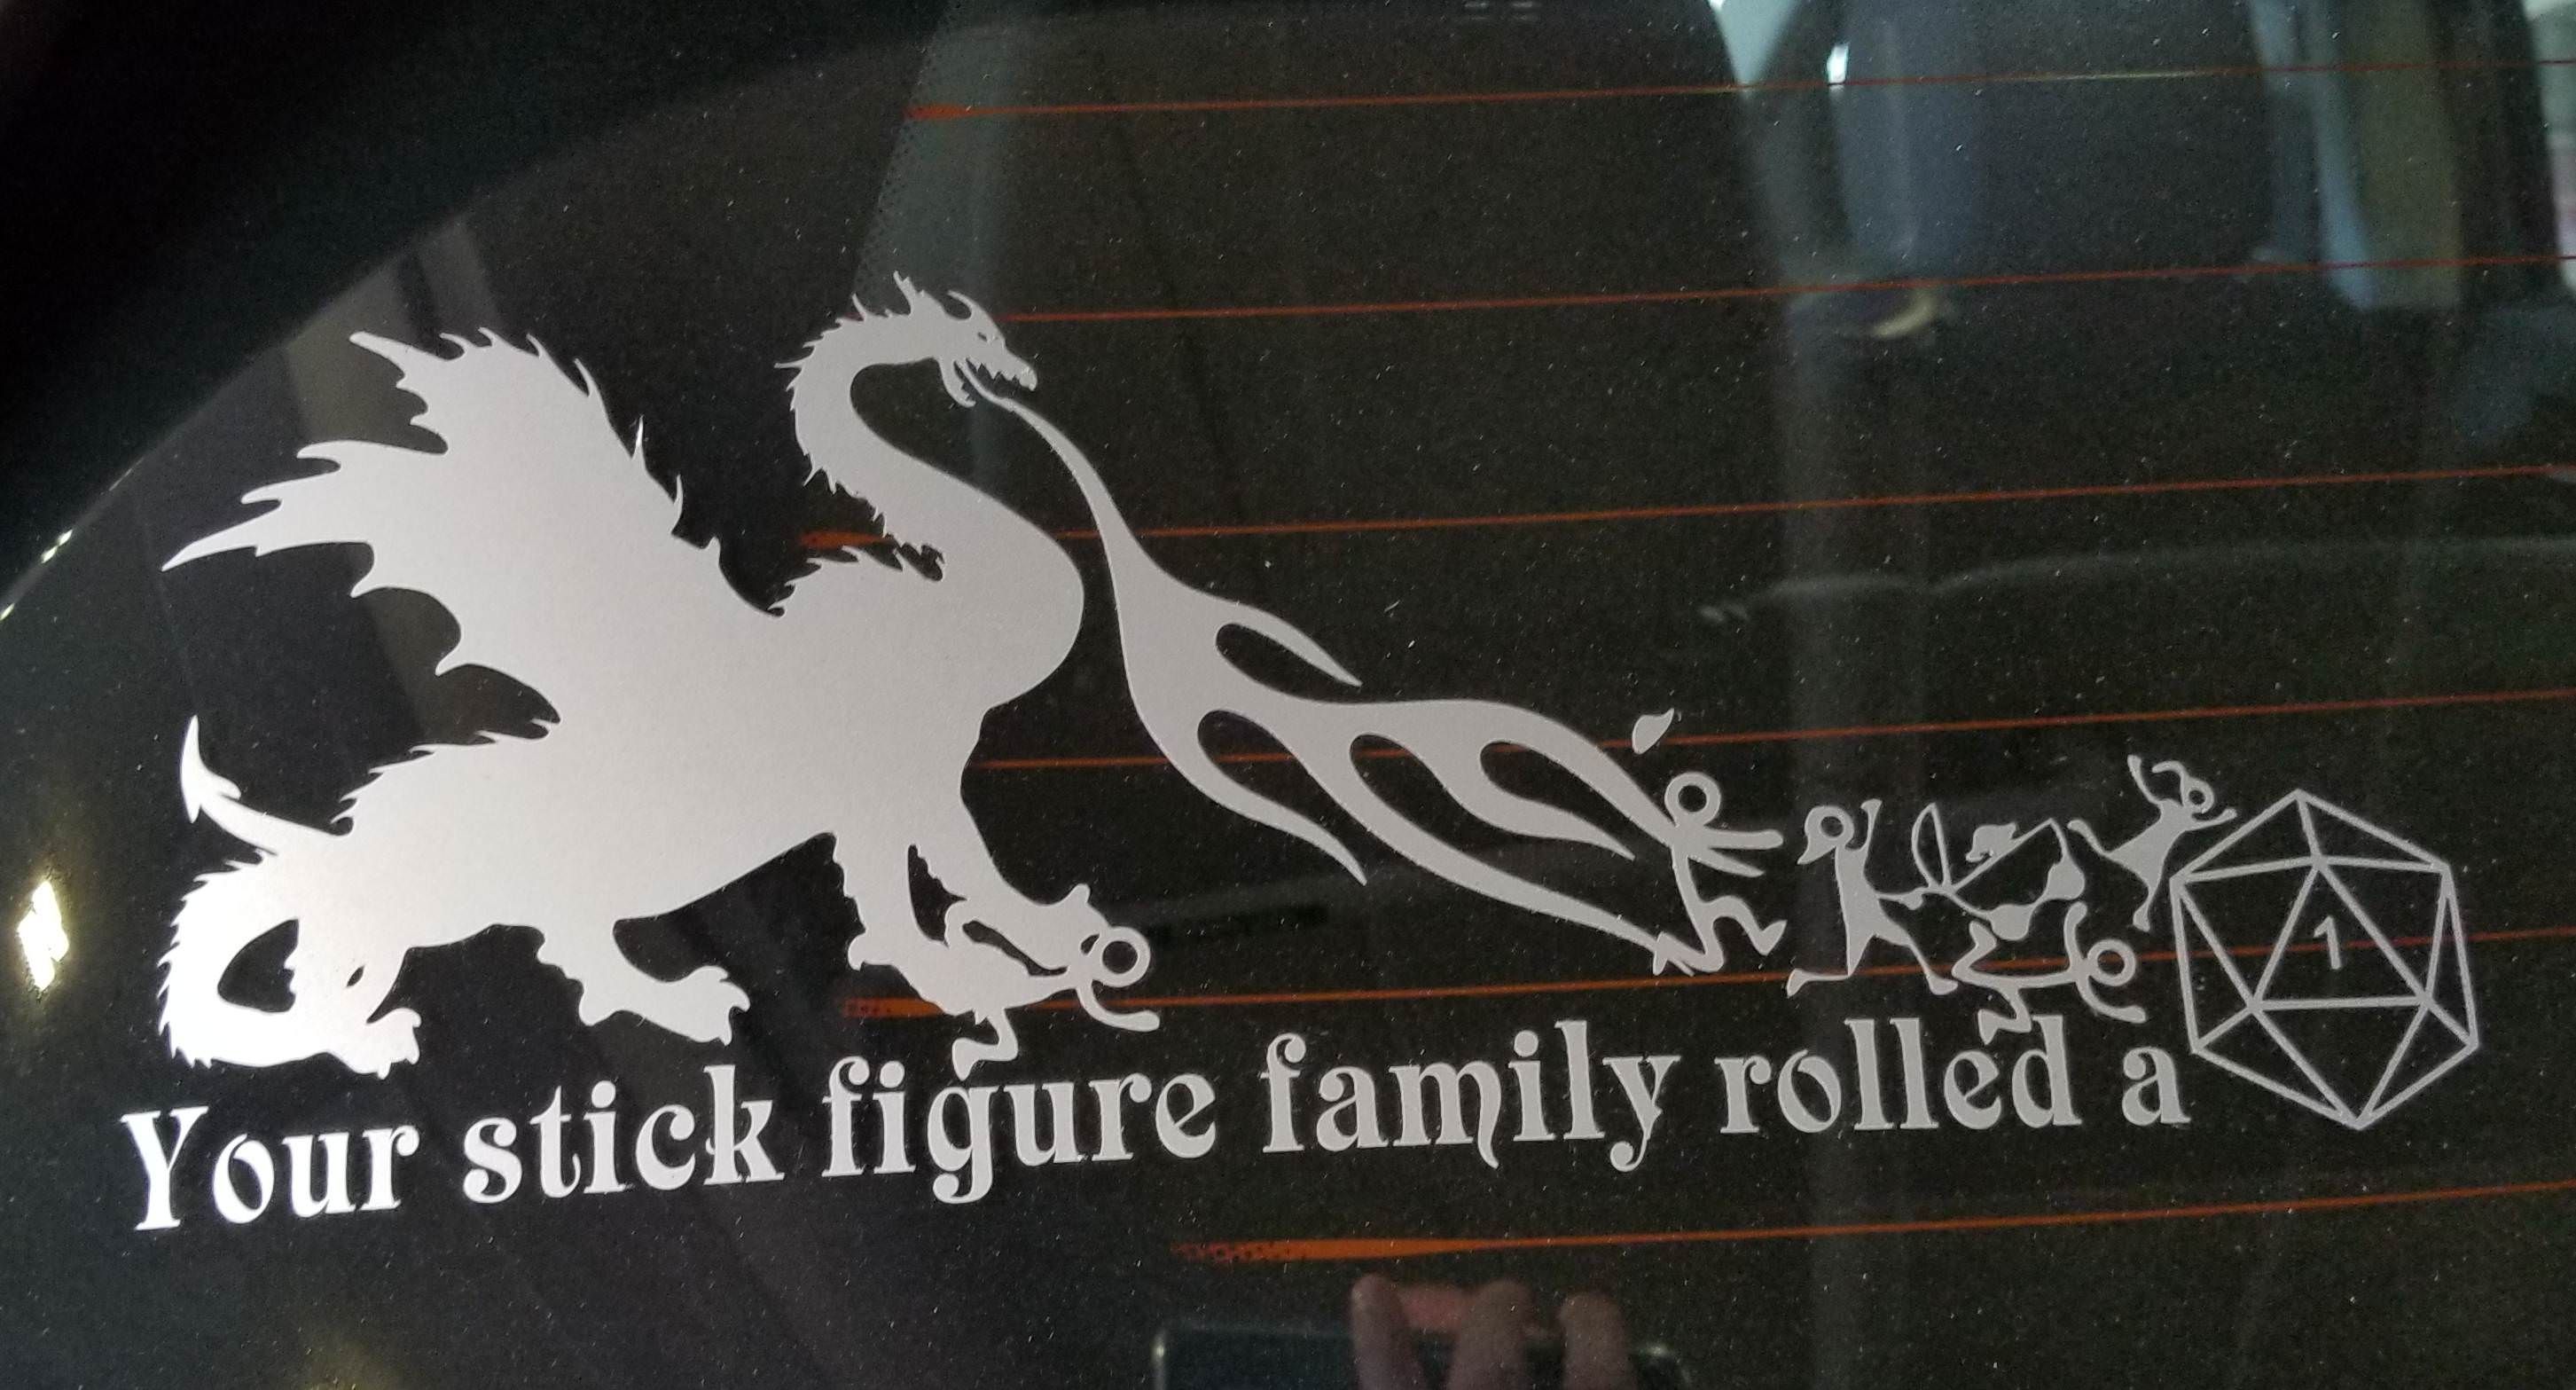 Best family car sticker yet.